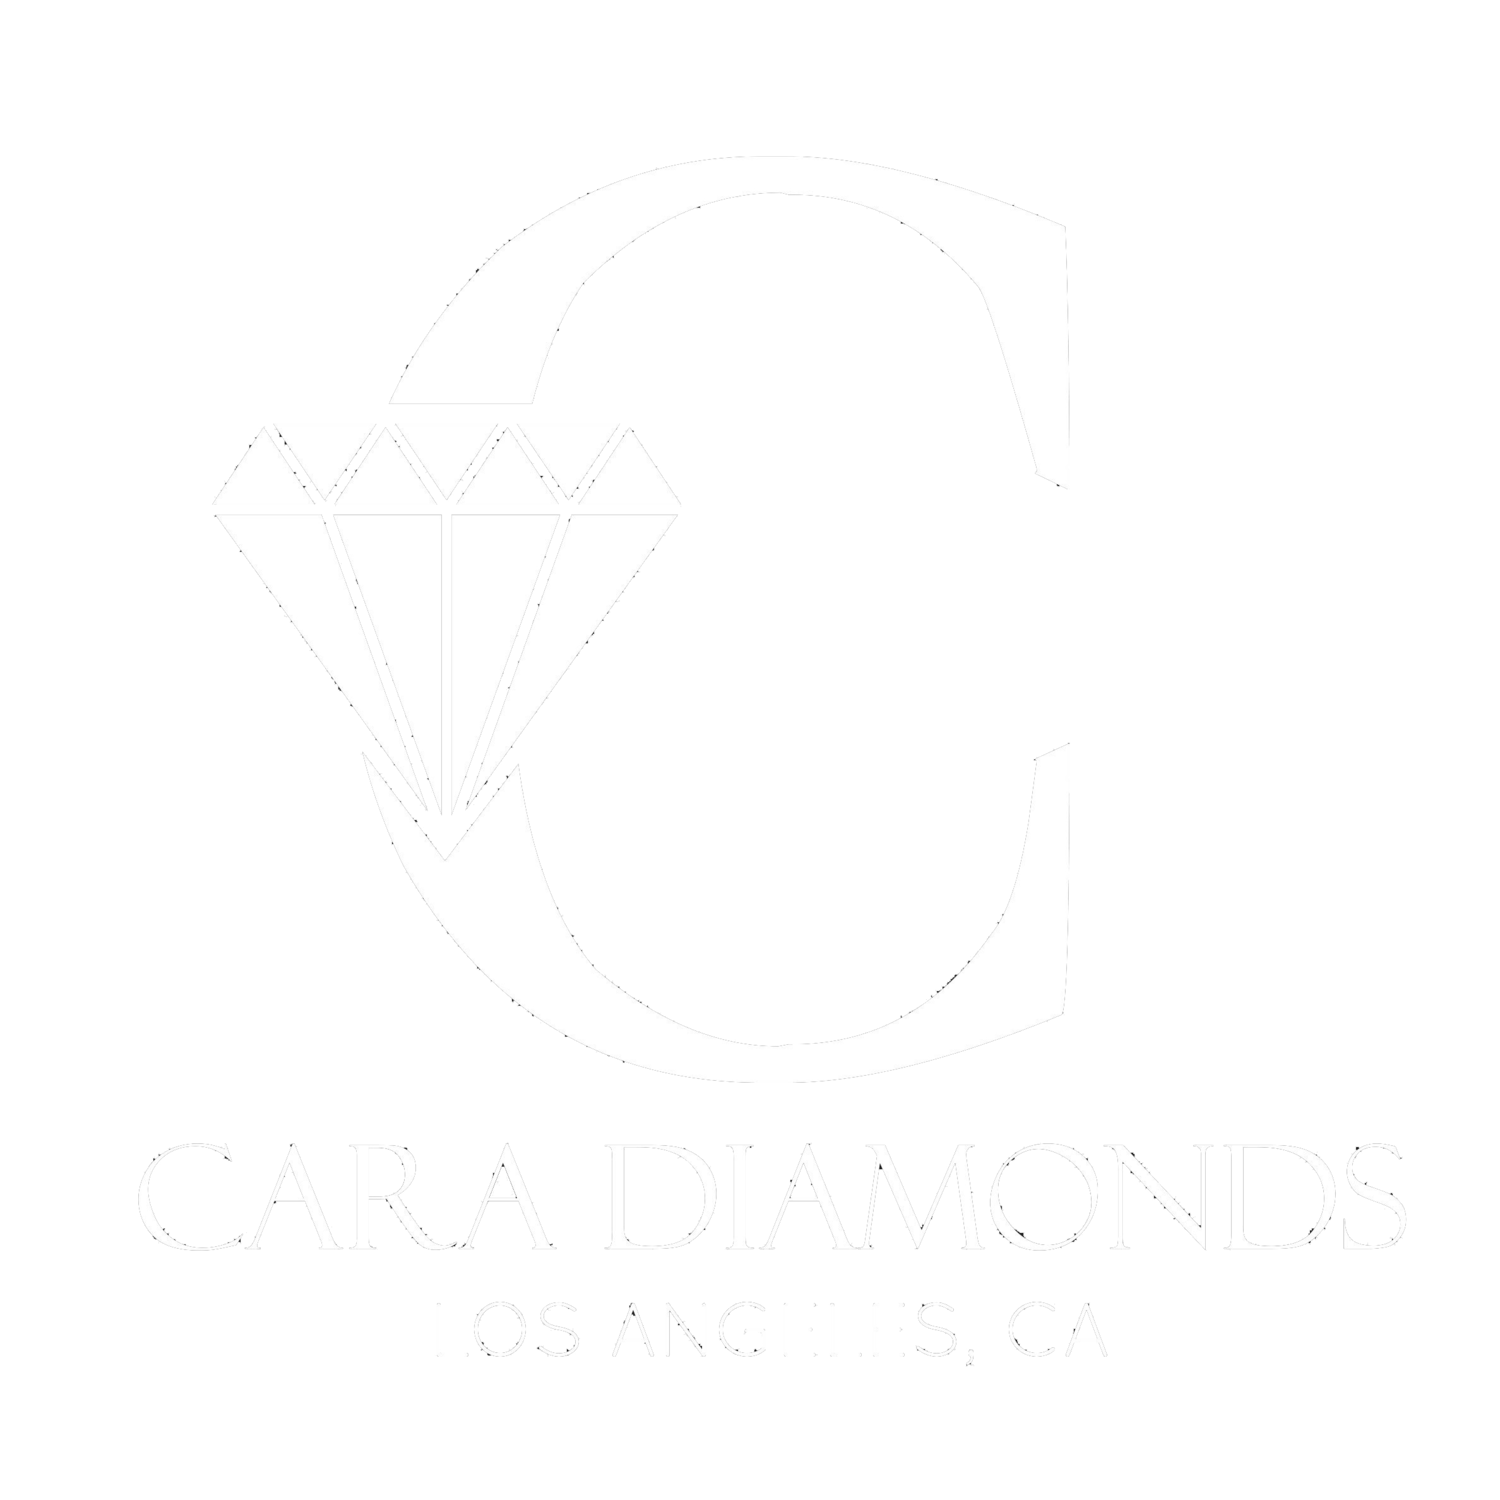 CARA DIAMONDS